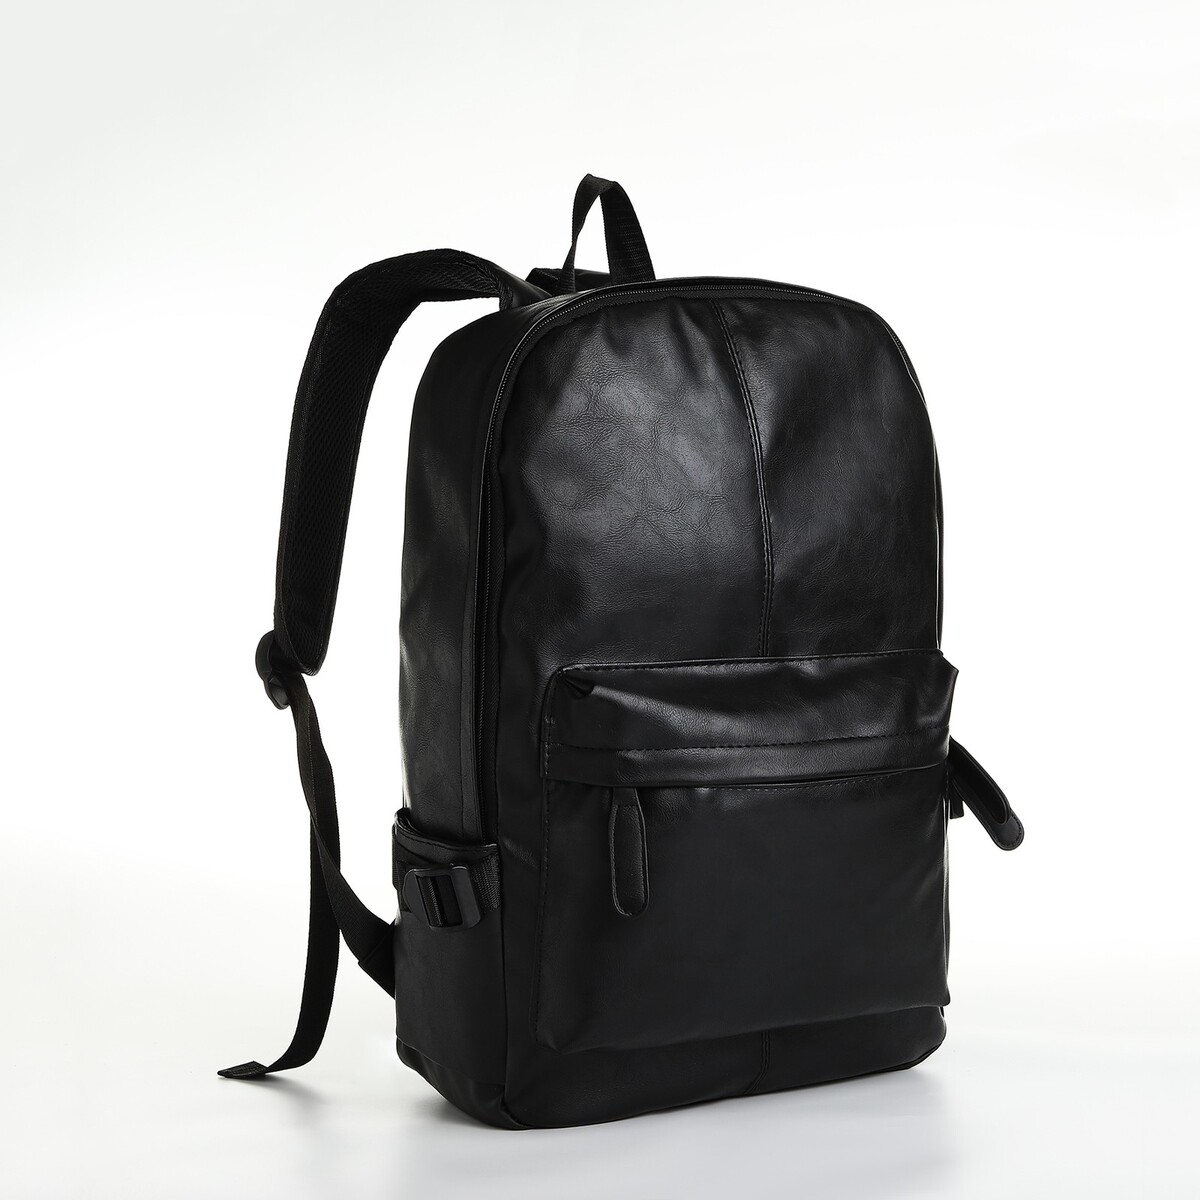 Рюкзак городской из искусственной кожи на молнии, 3 кармана, цвет черный